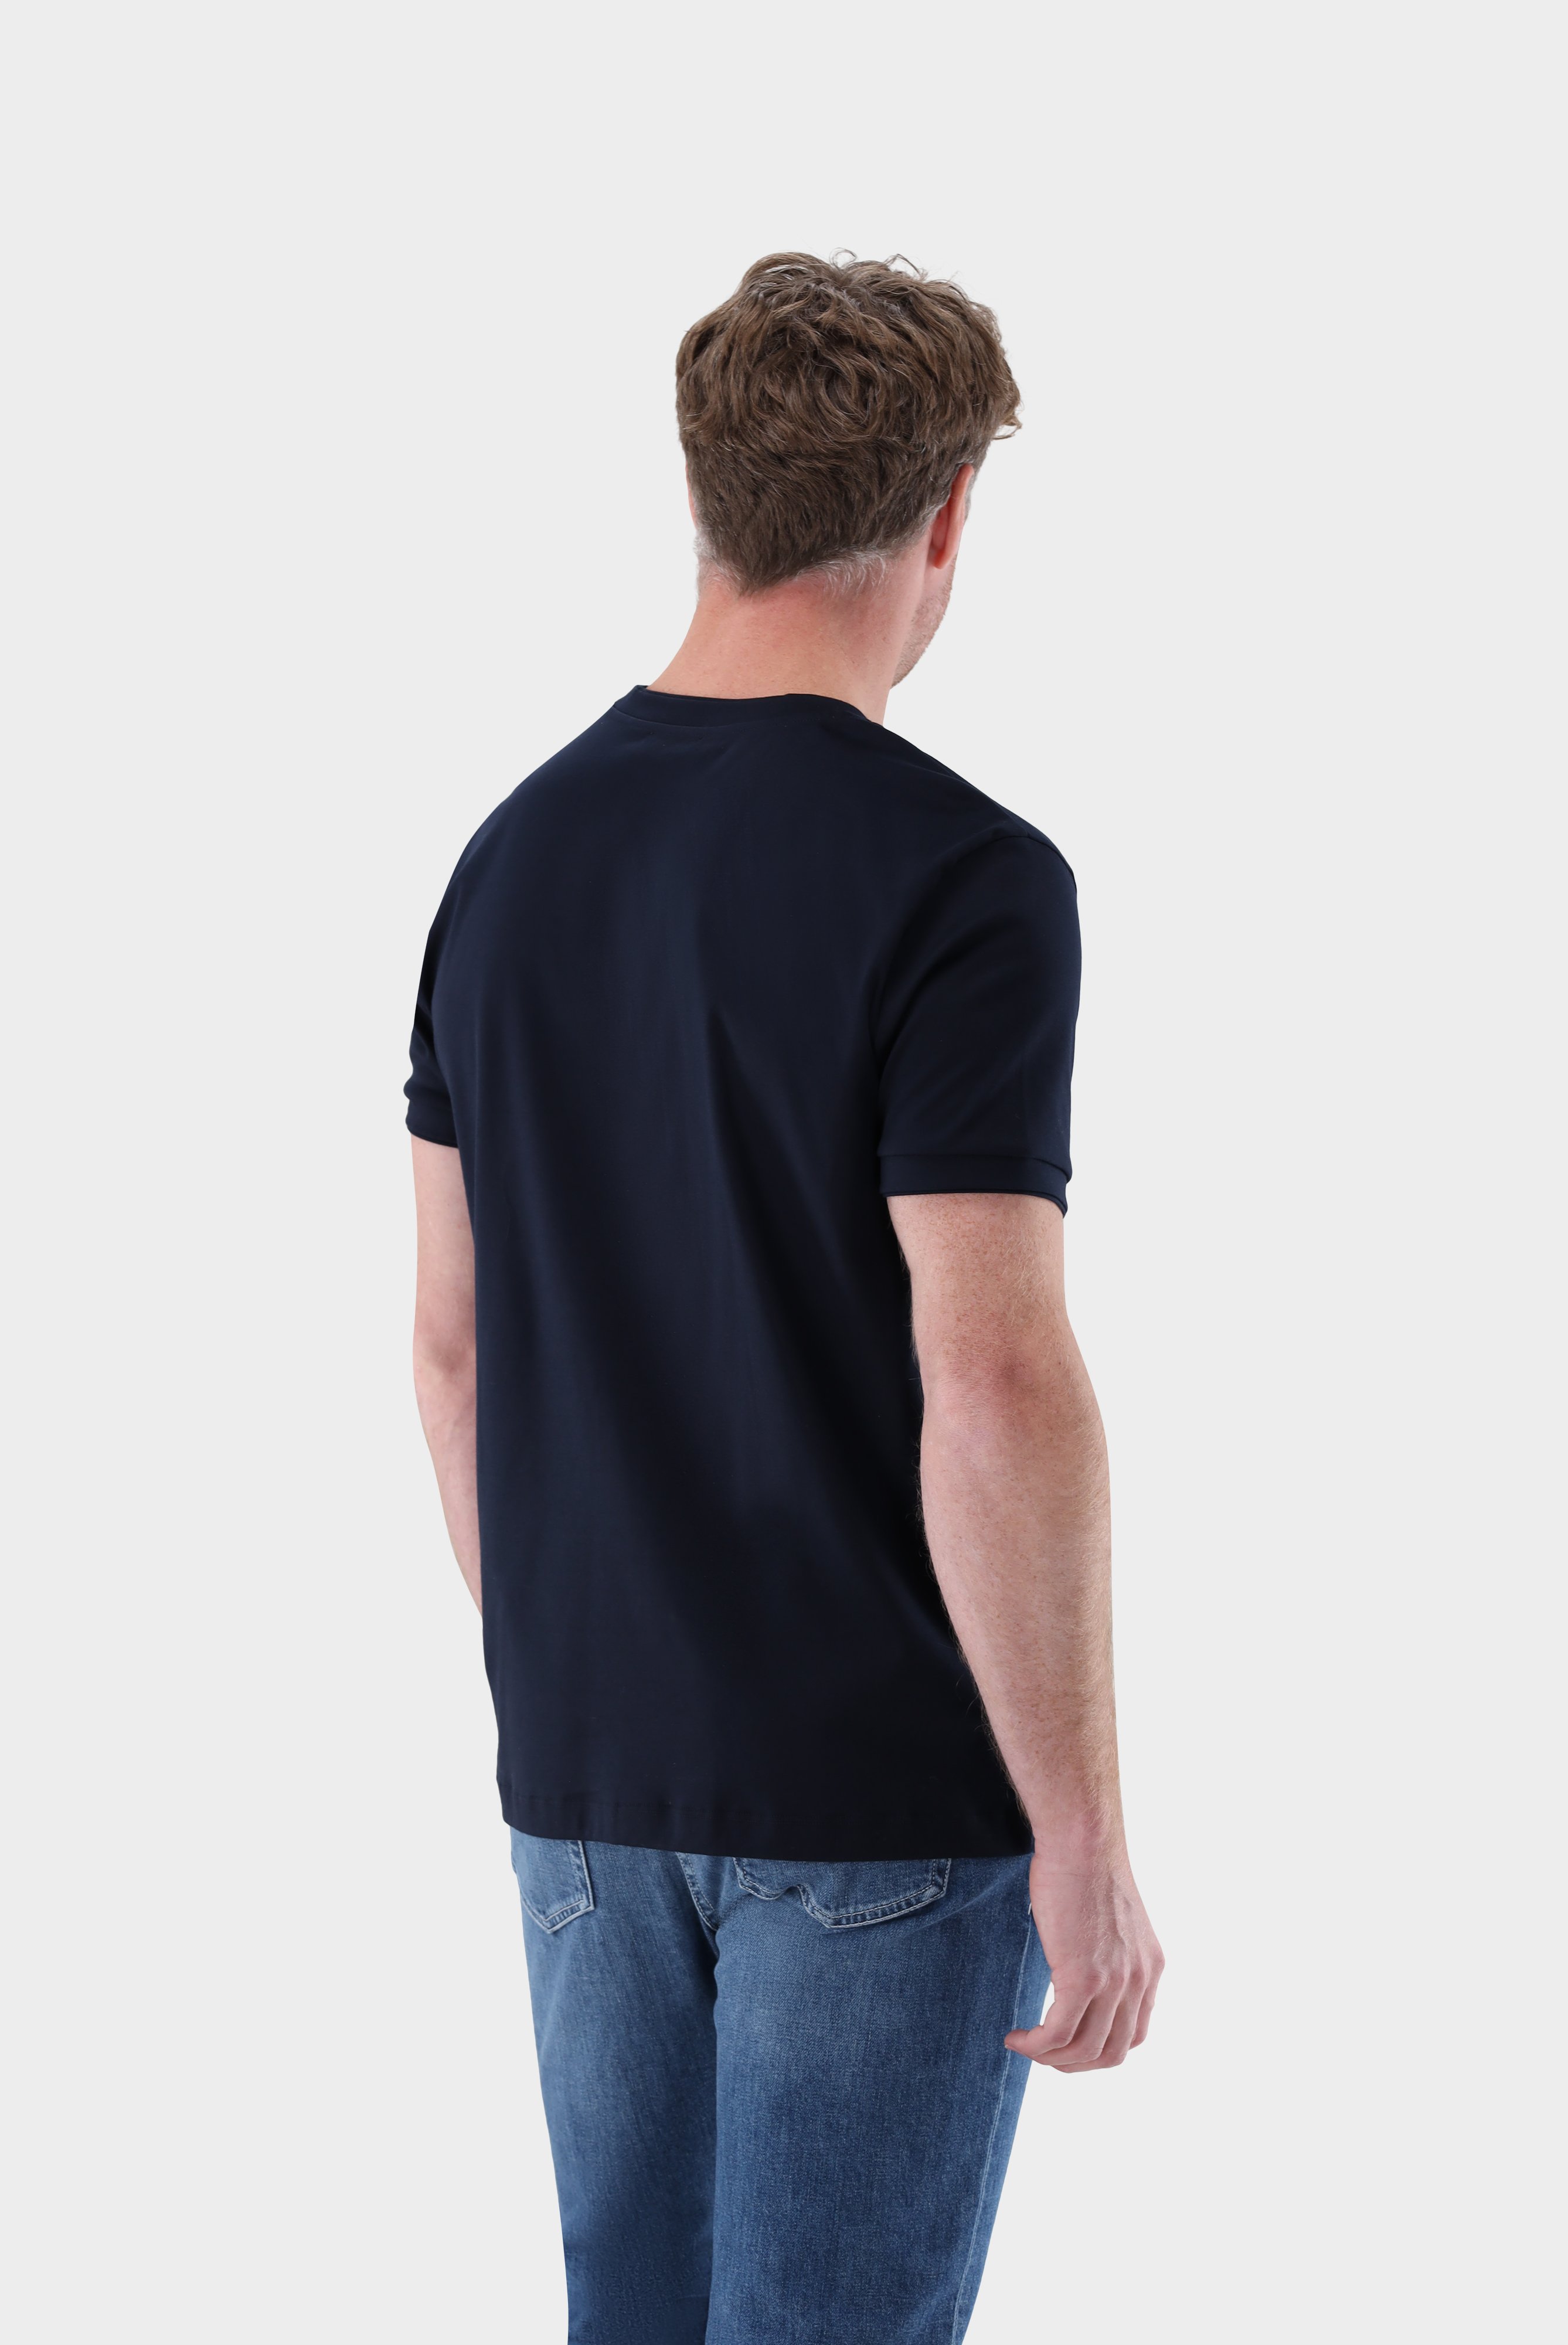 T-Shirts+T-Shirt mit Paspel Details+20.1673.U2.180053.790.S